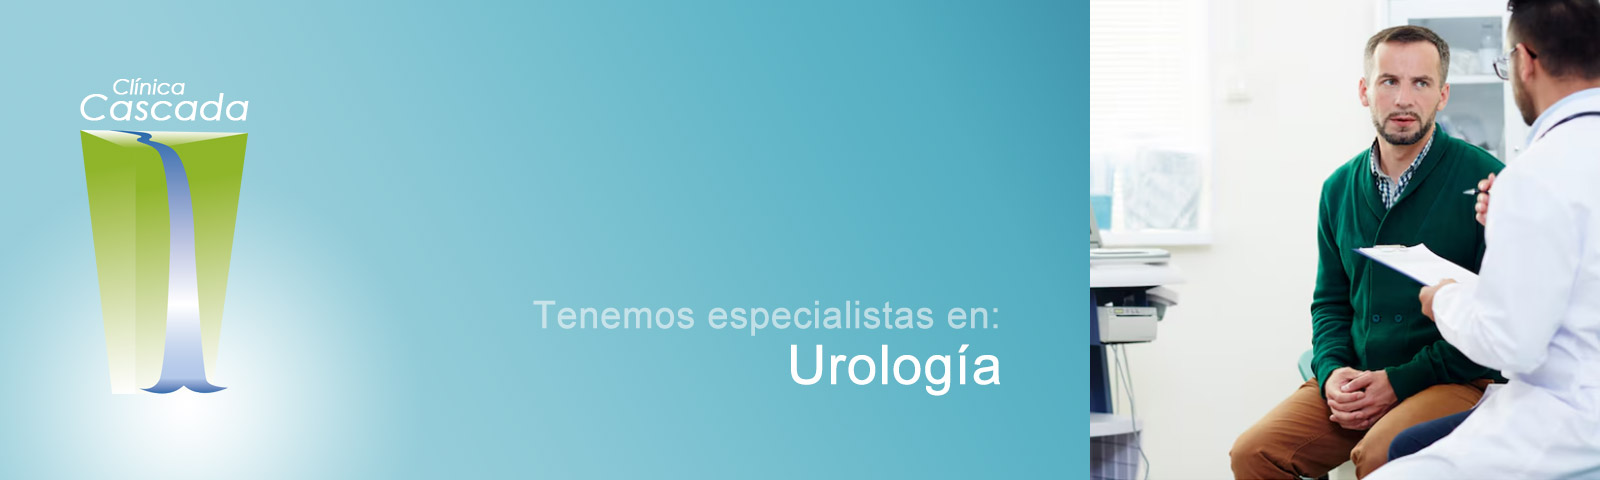 Especialistas en urología